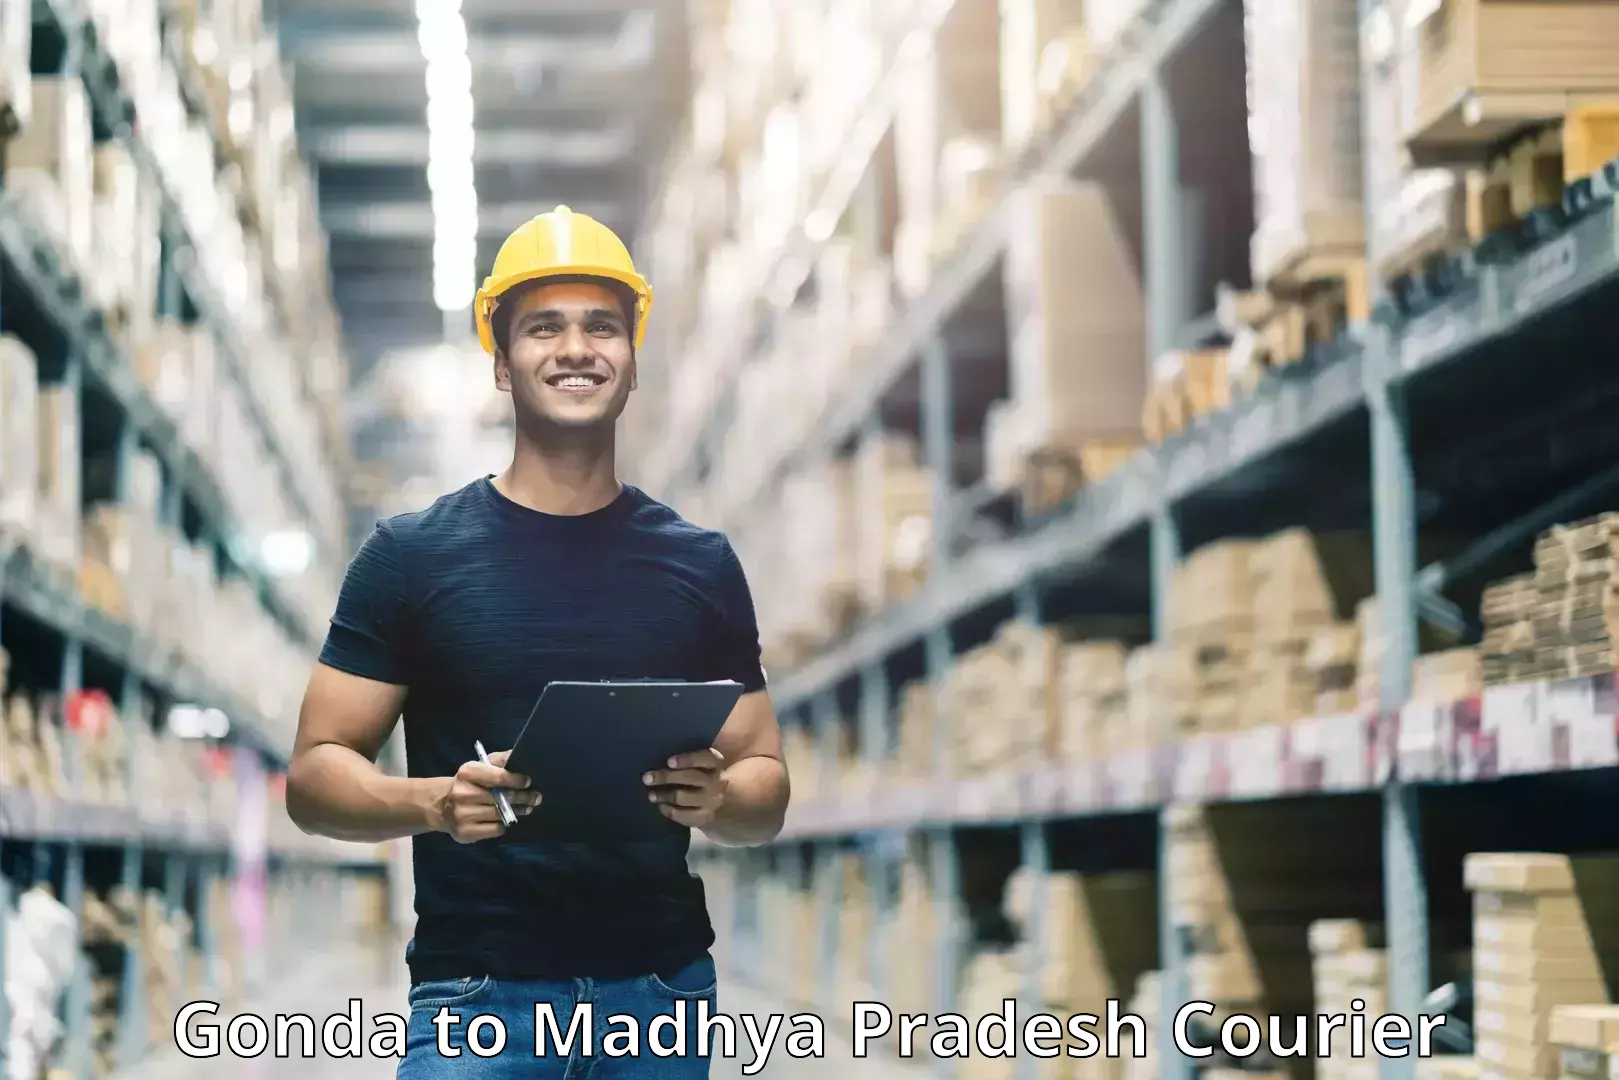 Specialized shipment handling Gonda to Madhya Pradesh